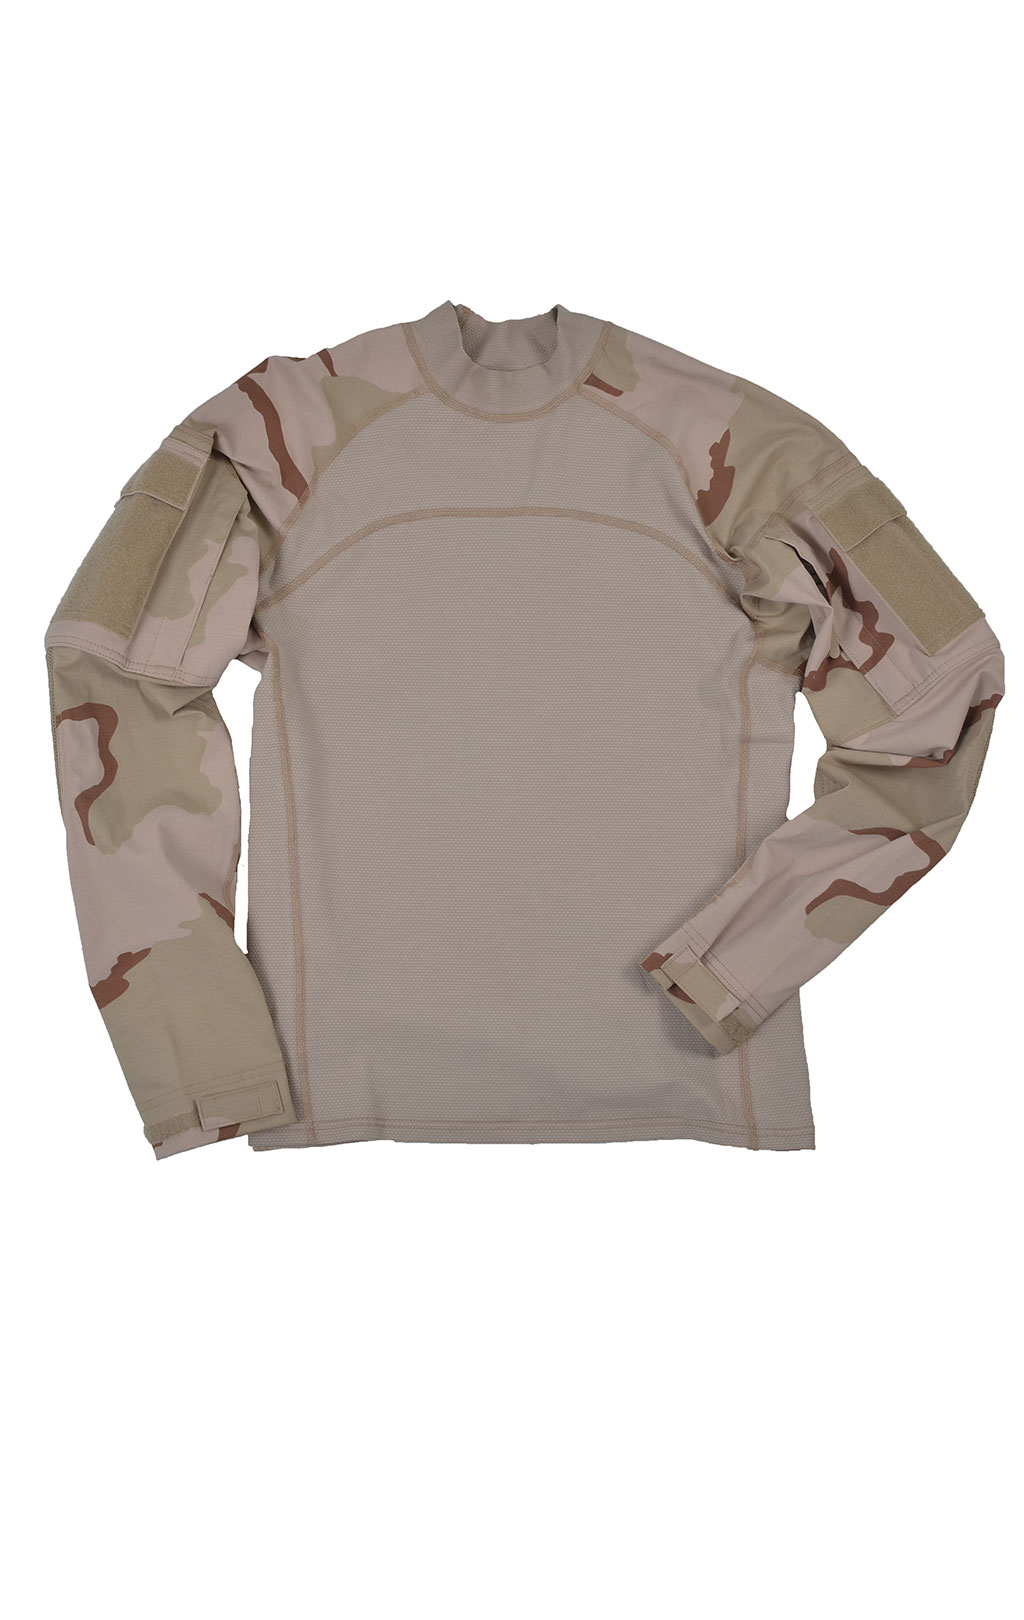 Рубашка Combat Shirt desert-3 США